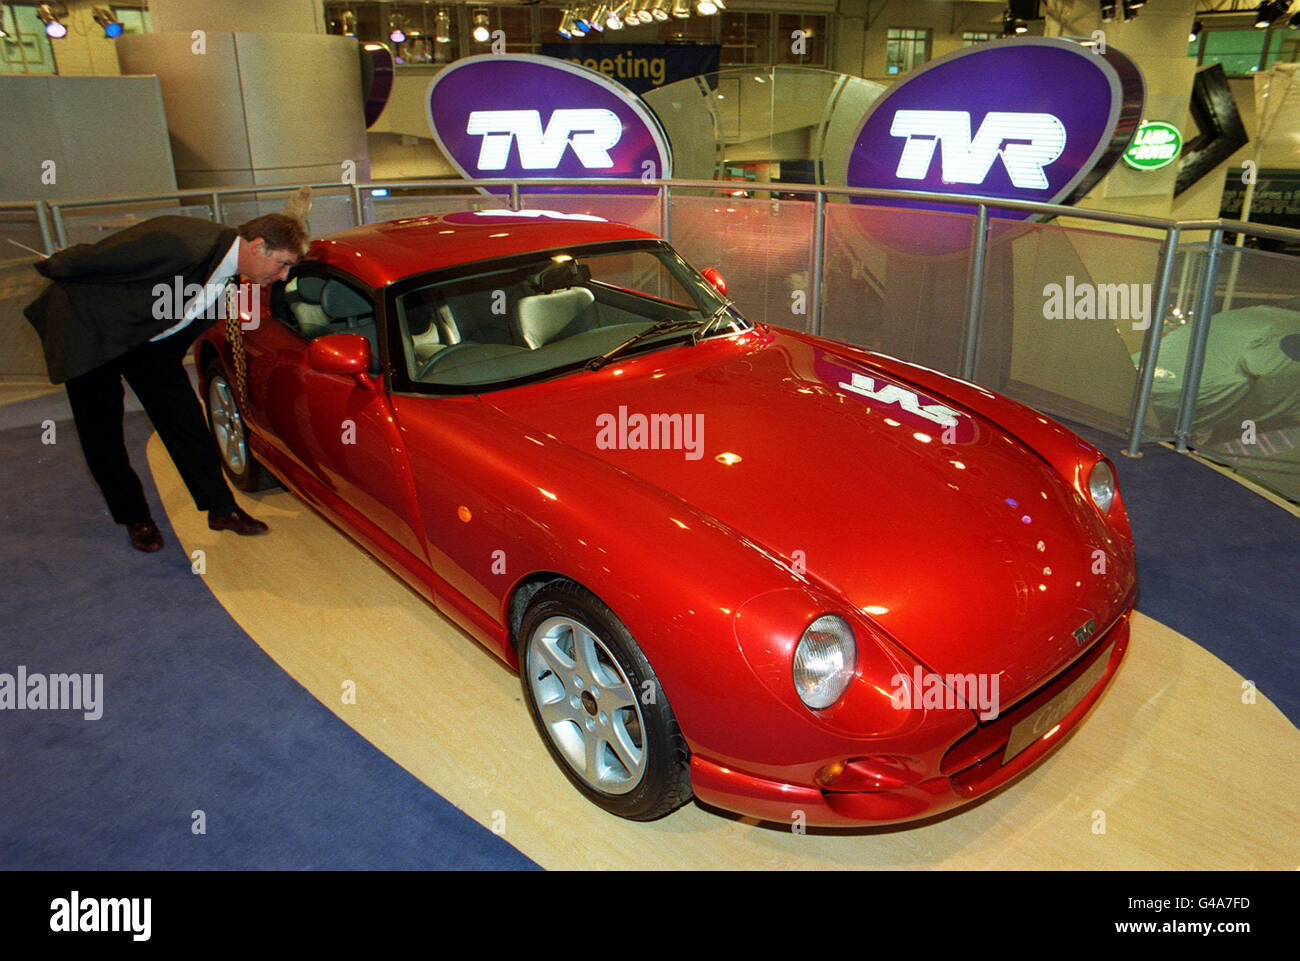 La TVR basée à Blackpool présente aujourd'hui (mardi) son nouveau coupé Cerbera à toit fixe de 4.2 litres, deux portes, dans un rouge brillant, au Earl's court London Motor Show. Photo de Ben Curtis. Banque D'Images